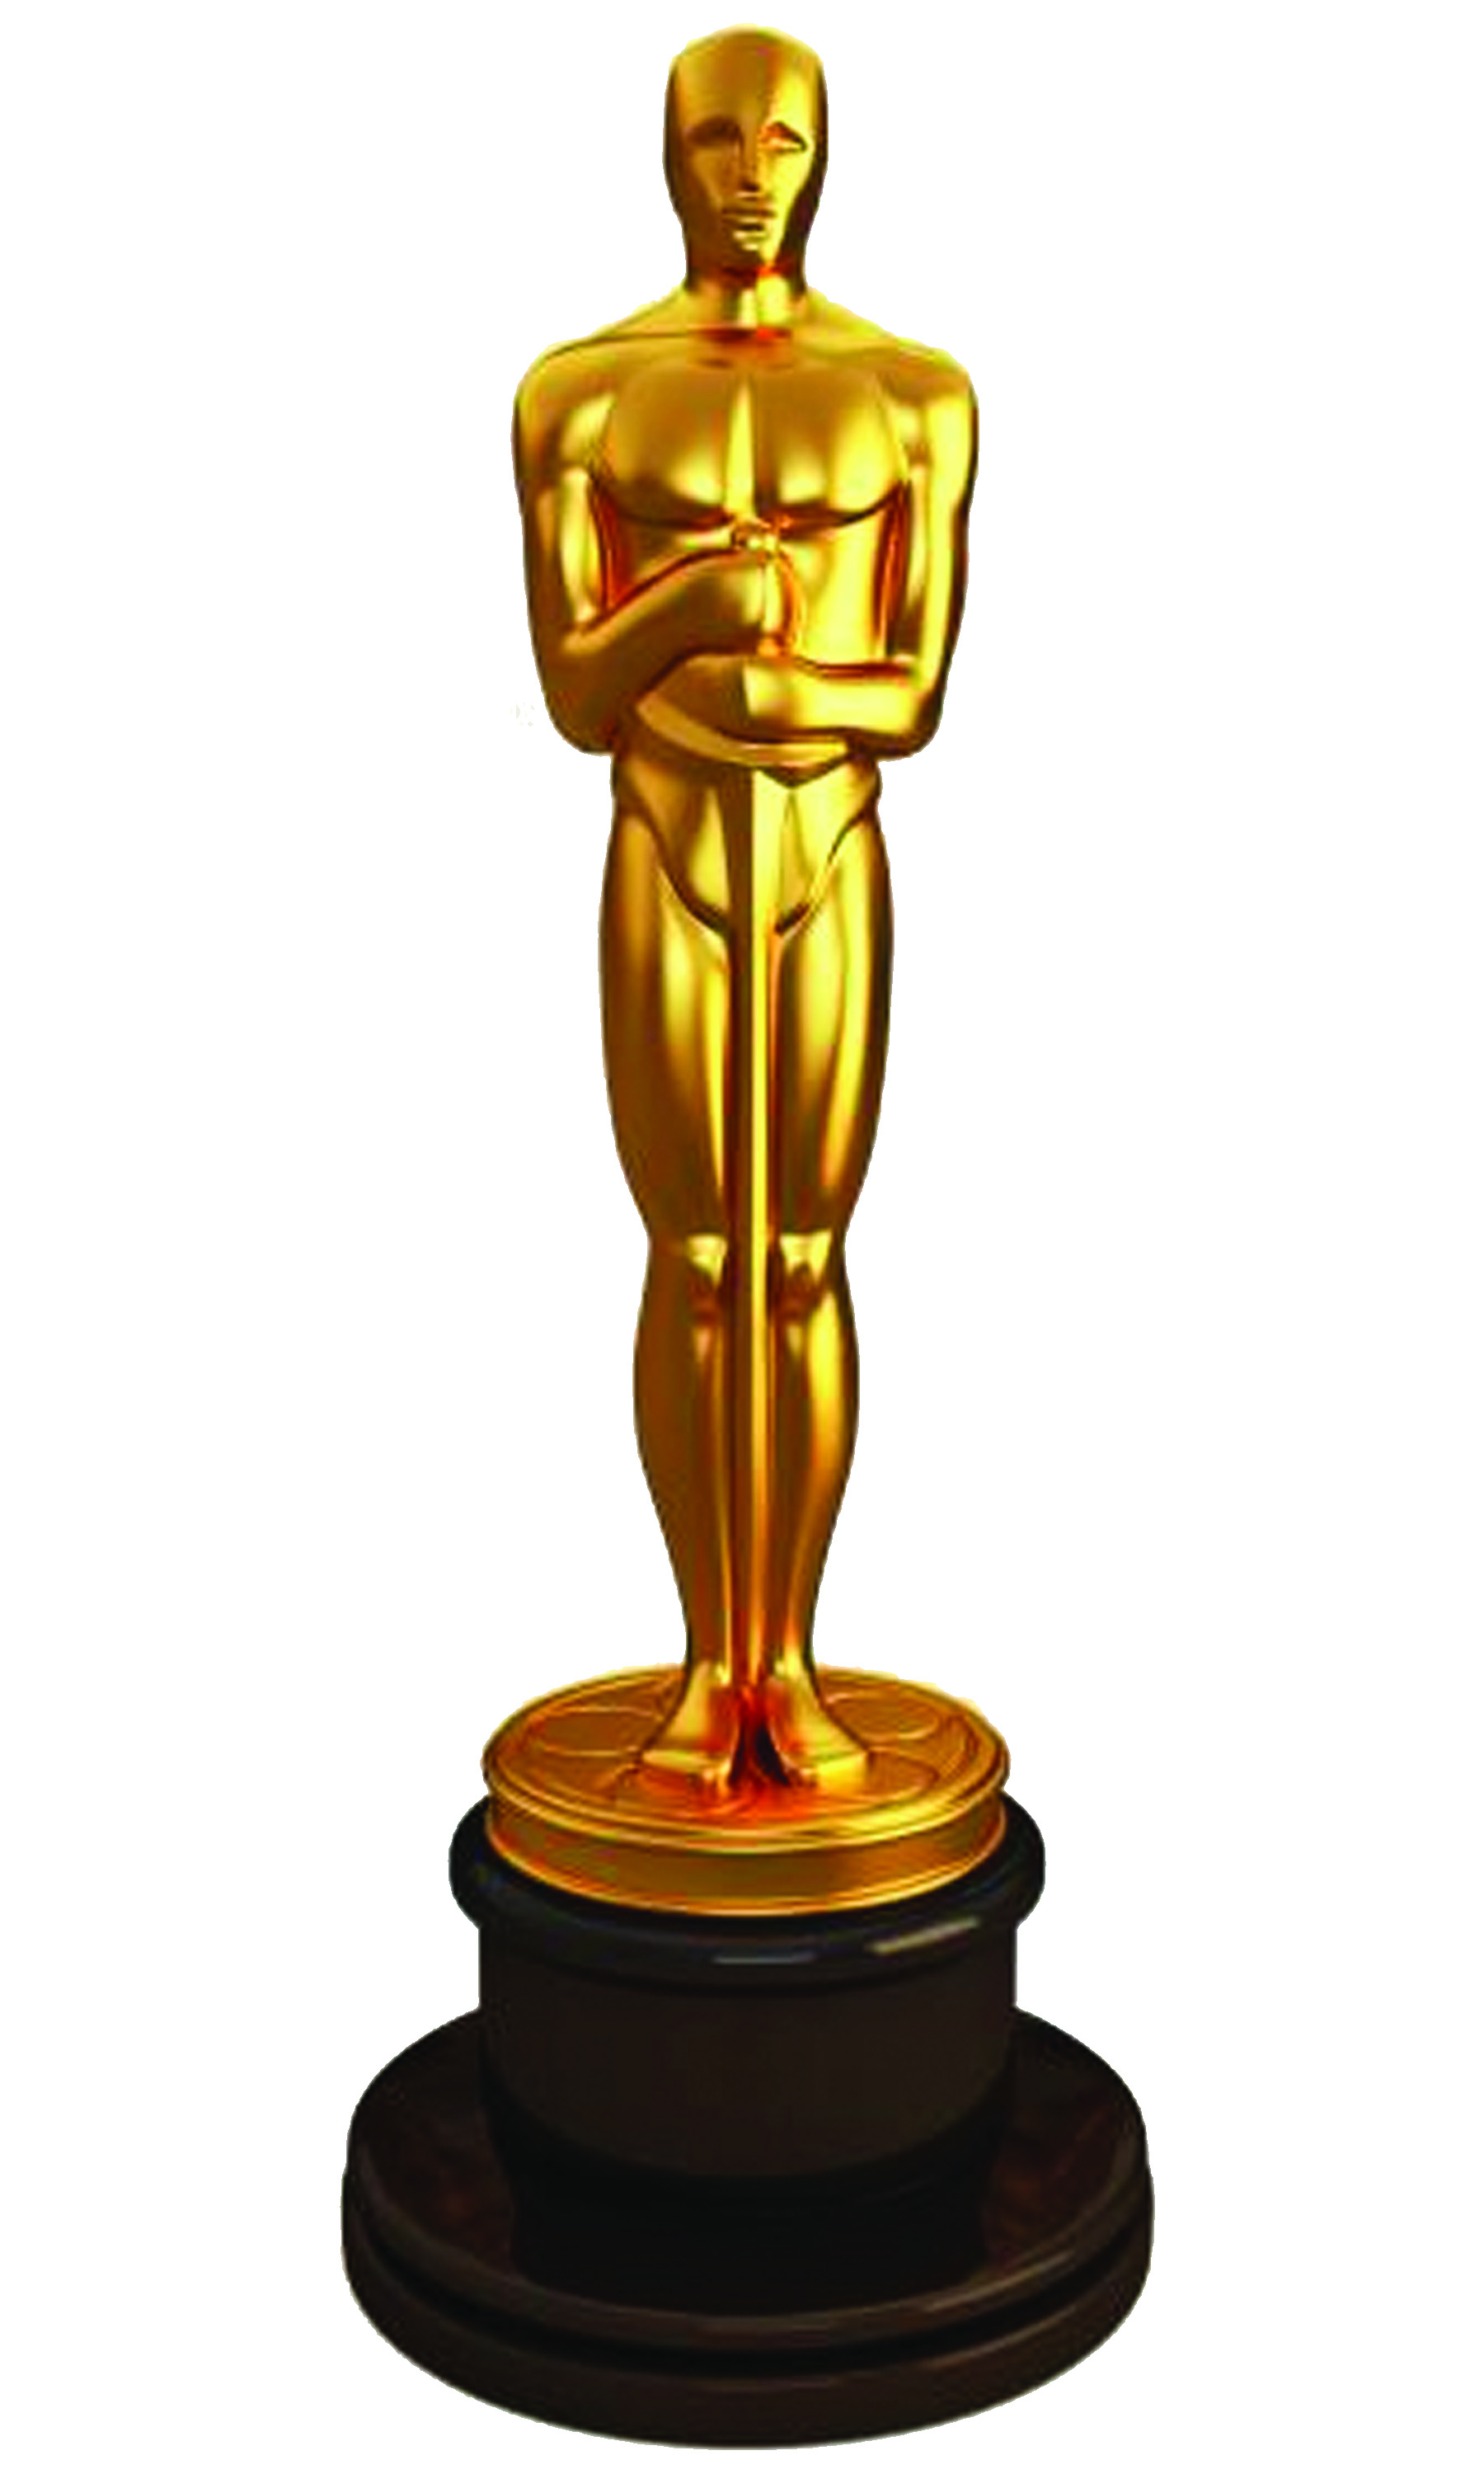 Academy award trophy clipart